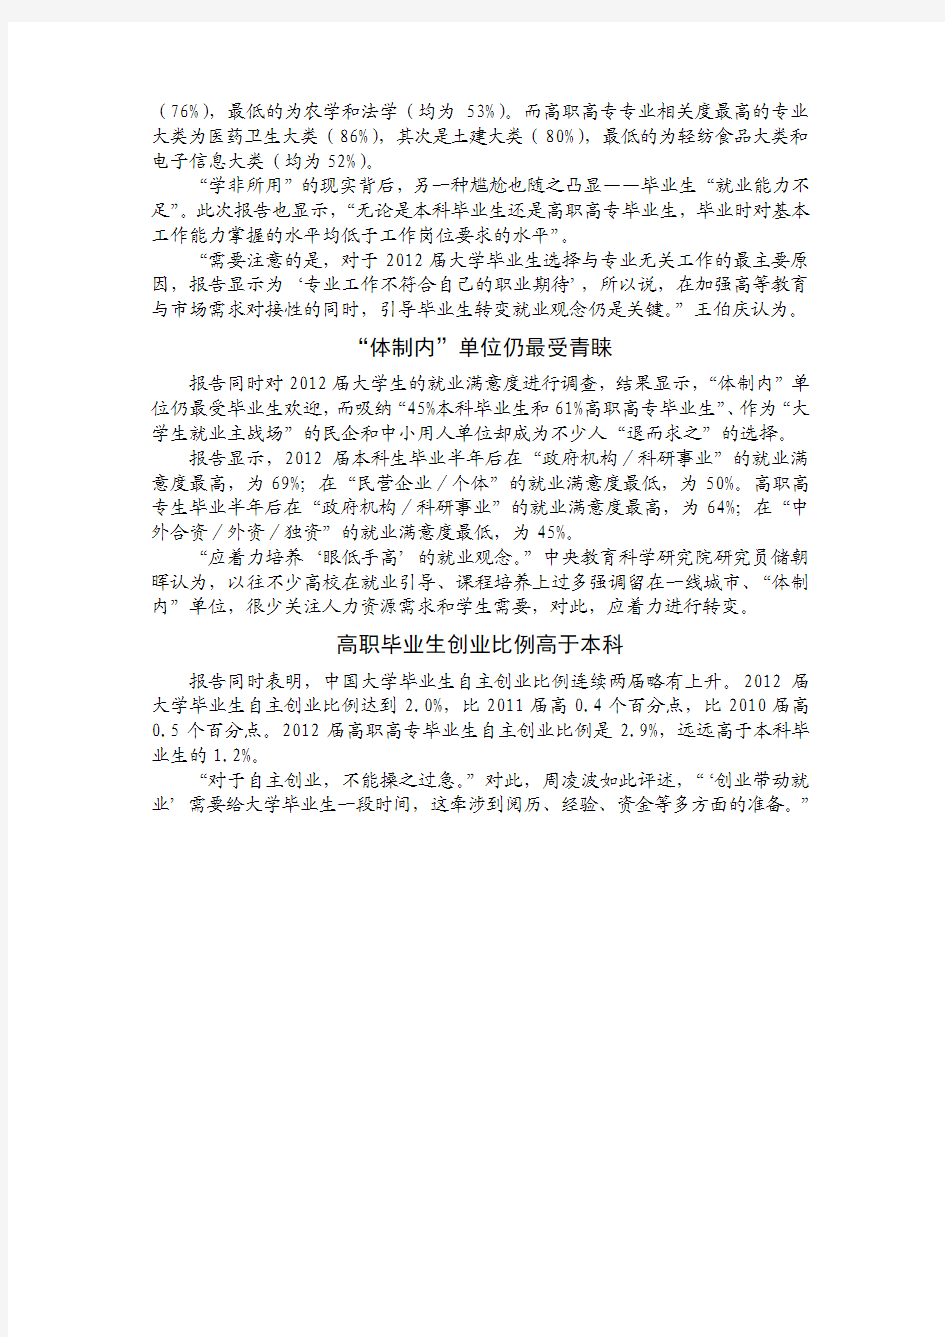 2013年中国大学生就业报告发布